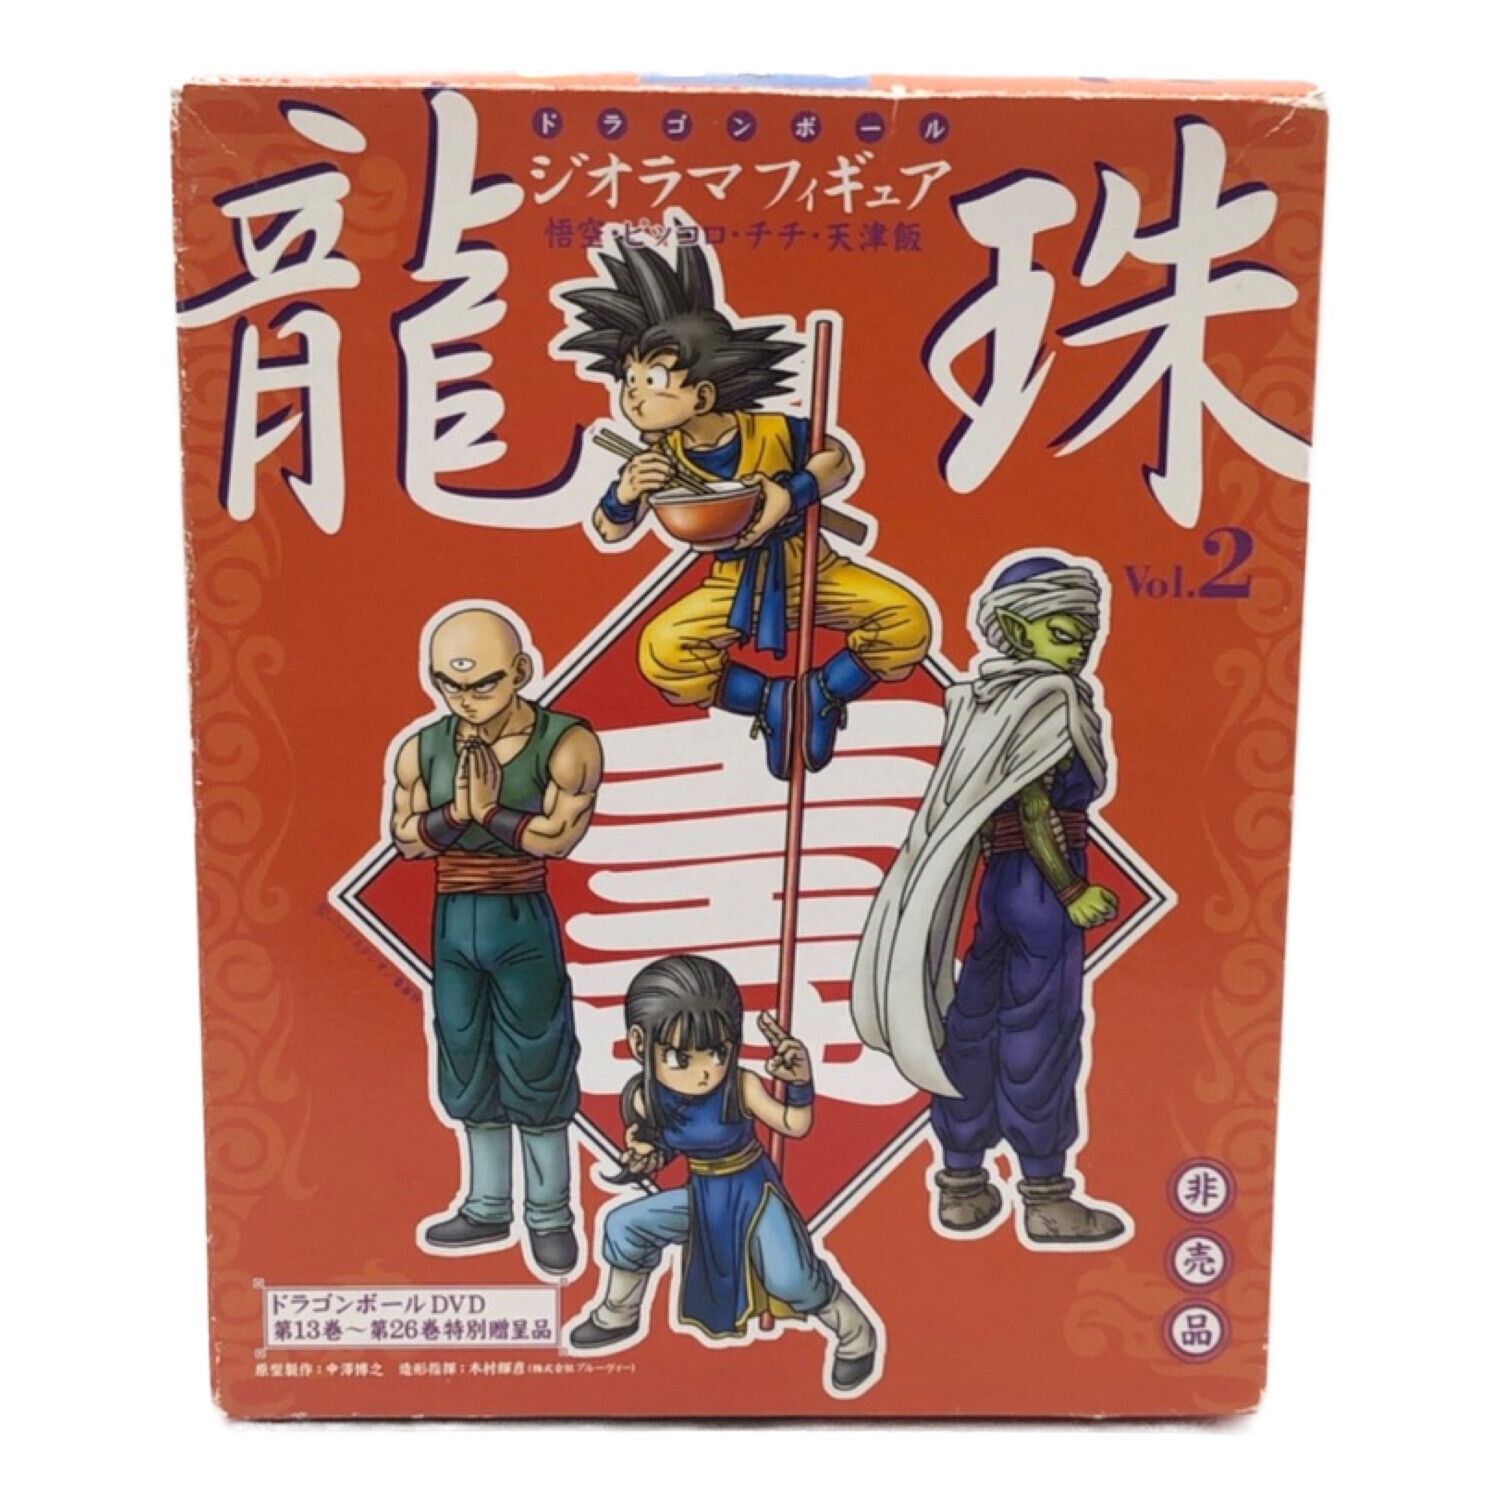 ドラゴンボール ジオラマフィギュア 龍珠 vol.1 DVD特典 | www 